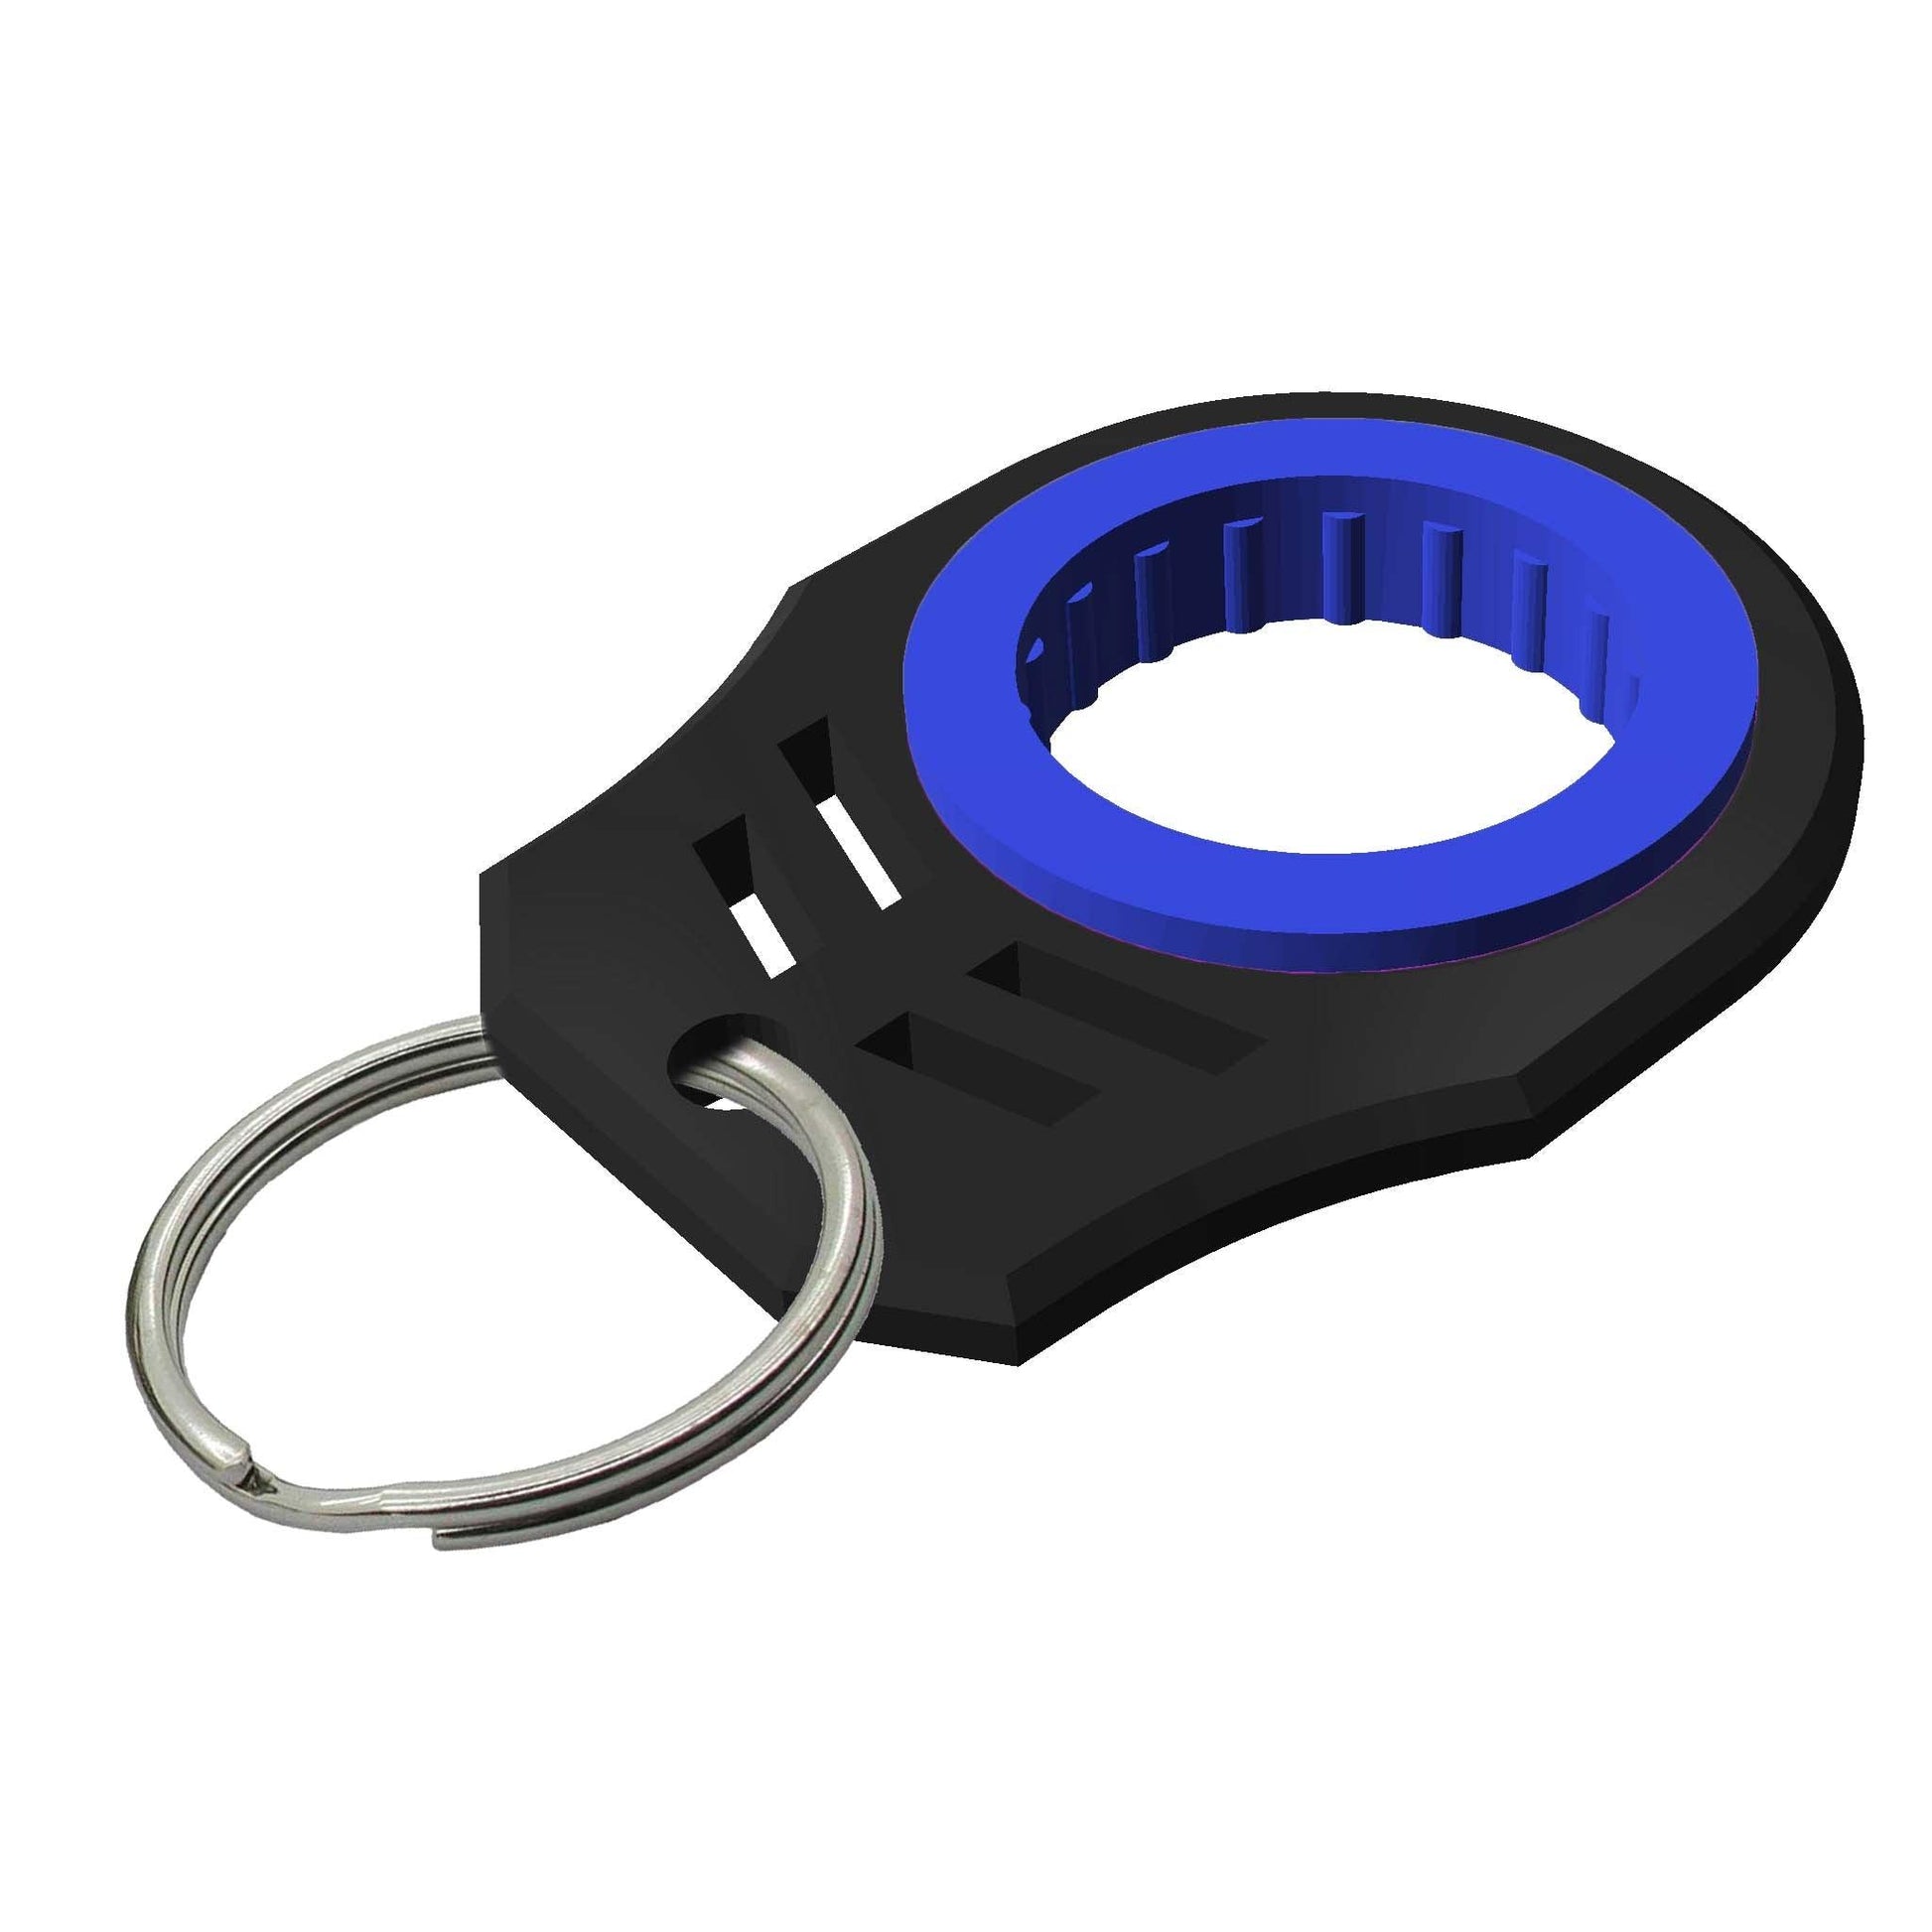 Keychain Finger Spinner for Fidgeting Fun